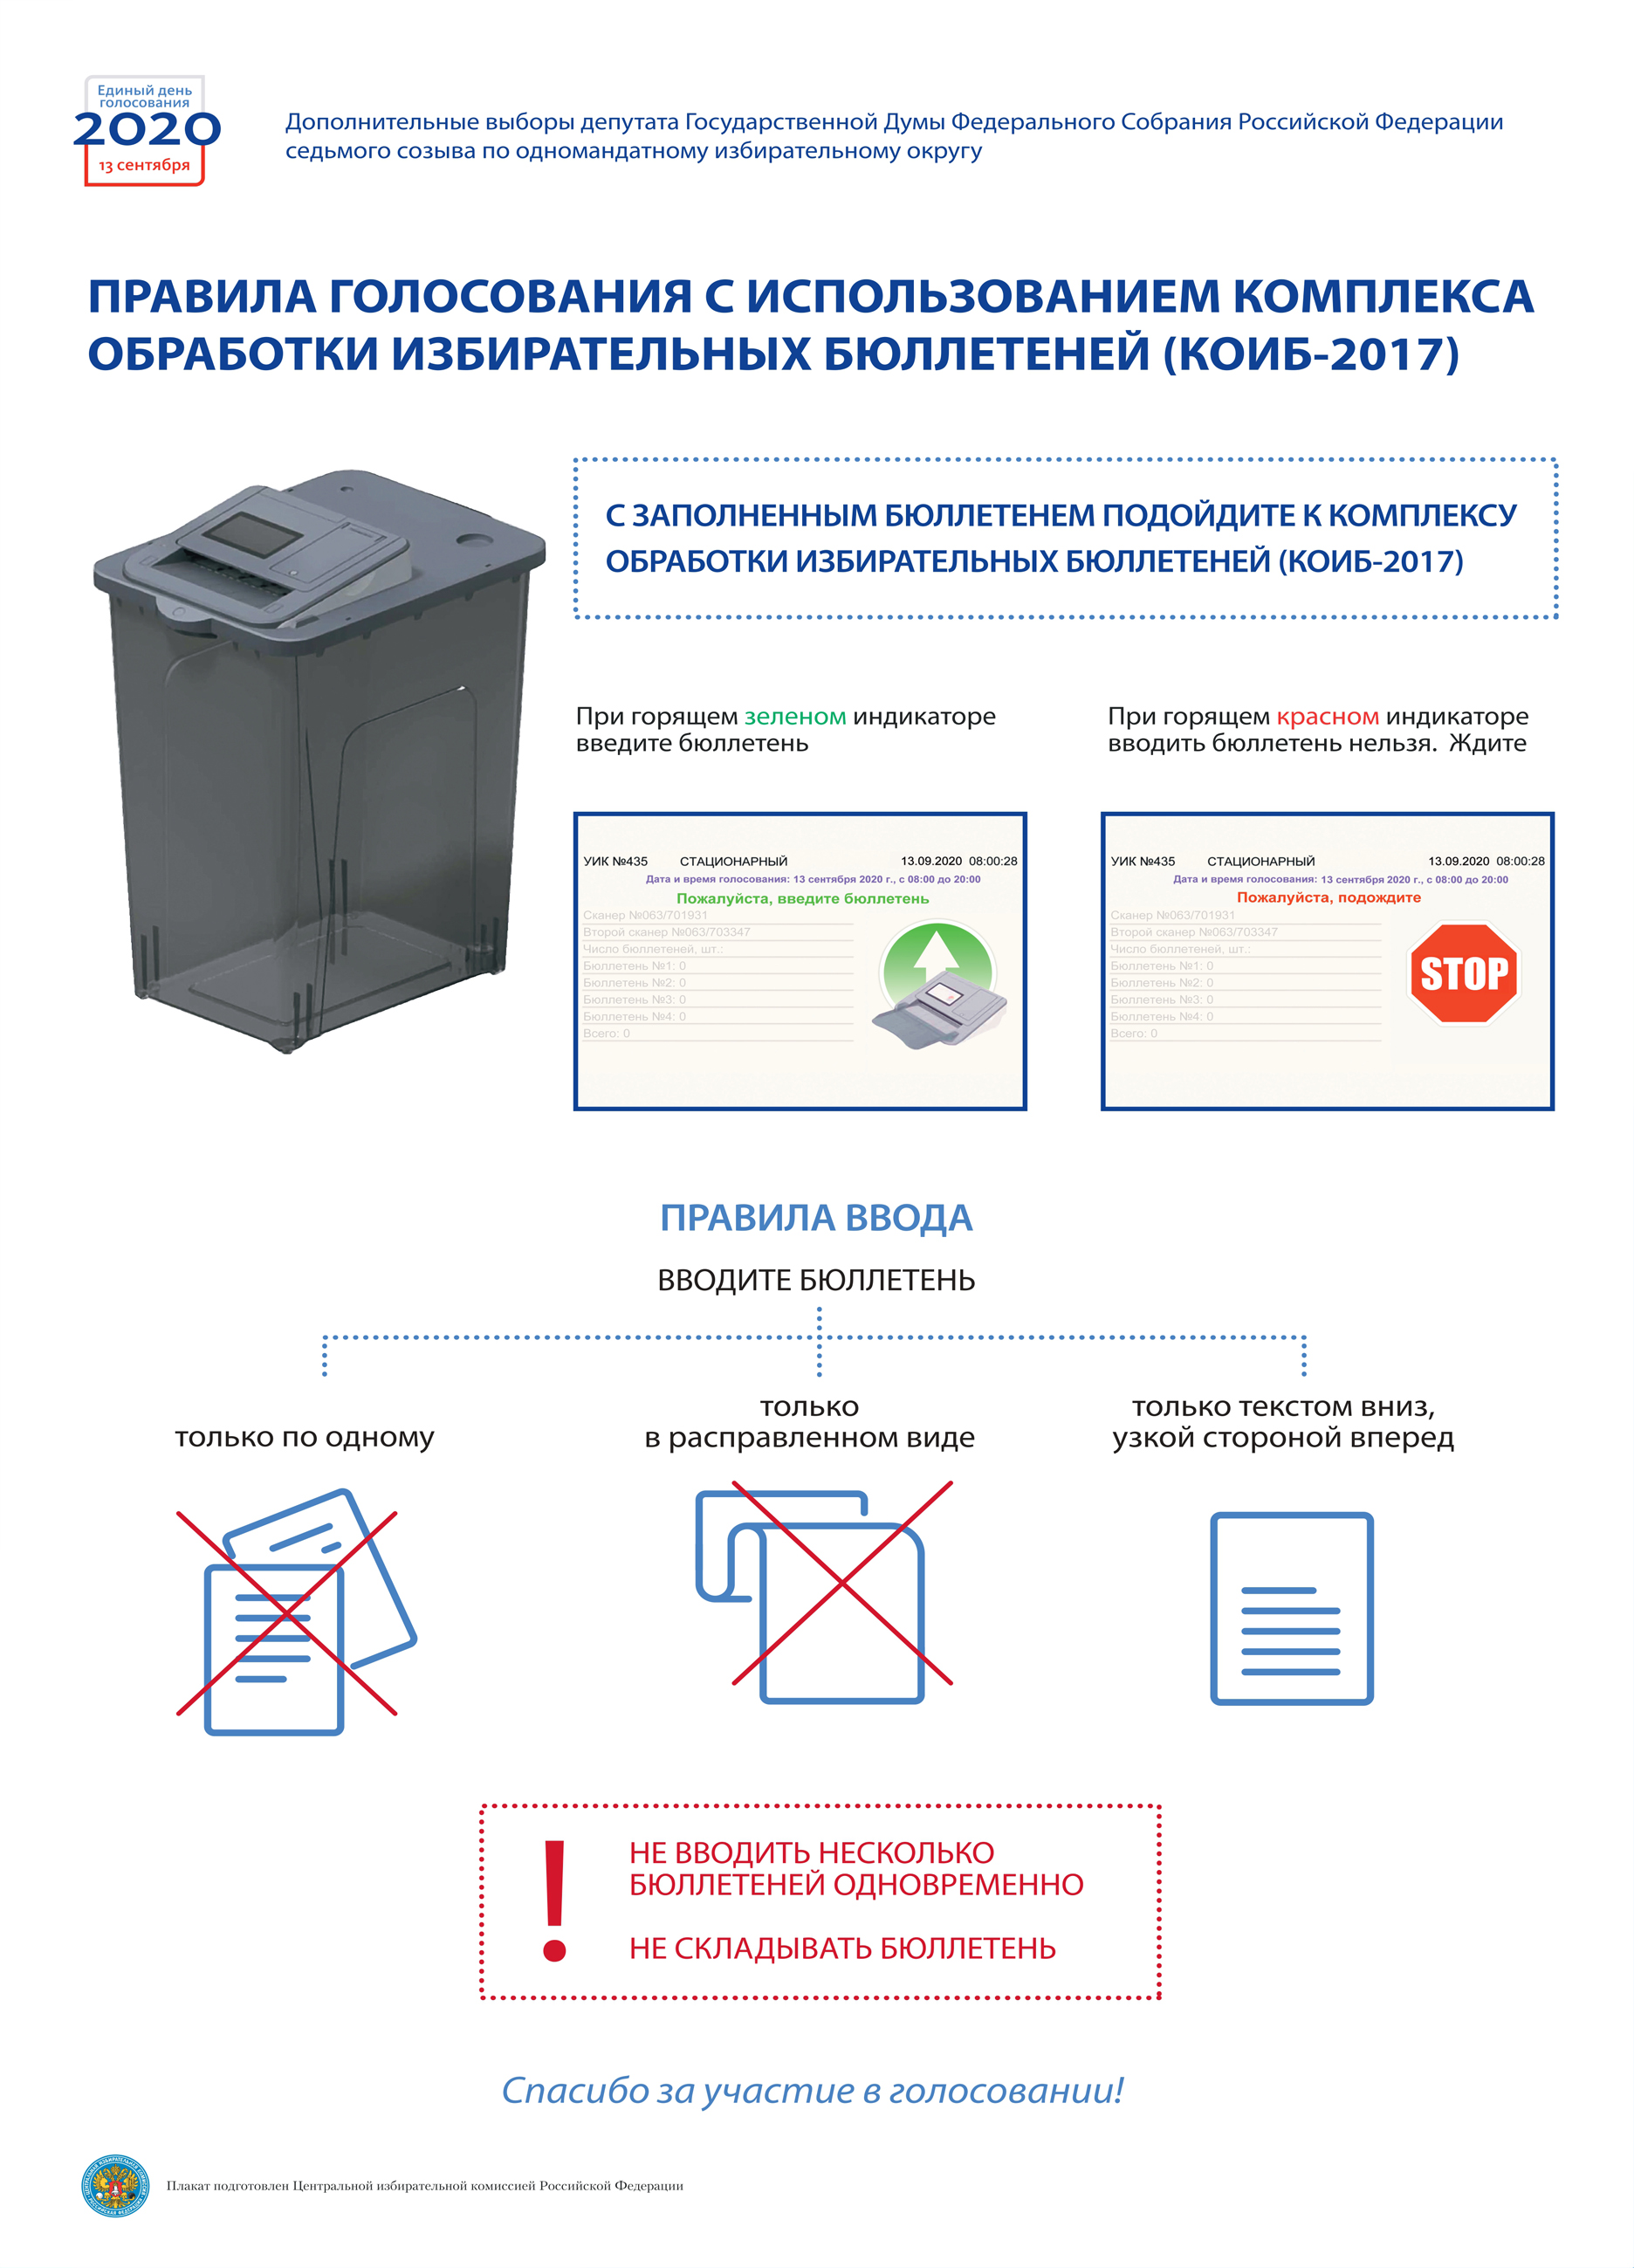 Правила голосования с использованием КОИБ-2017 (МГТУ)